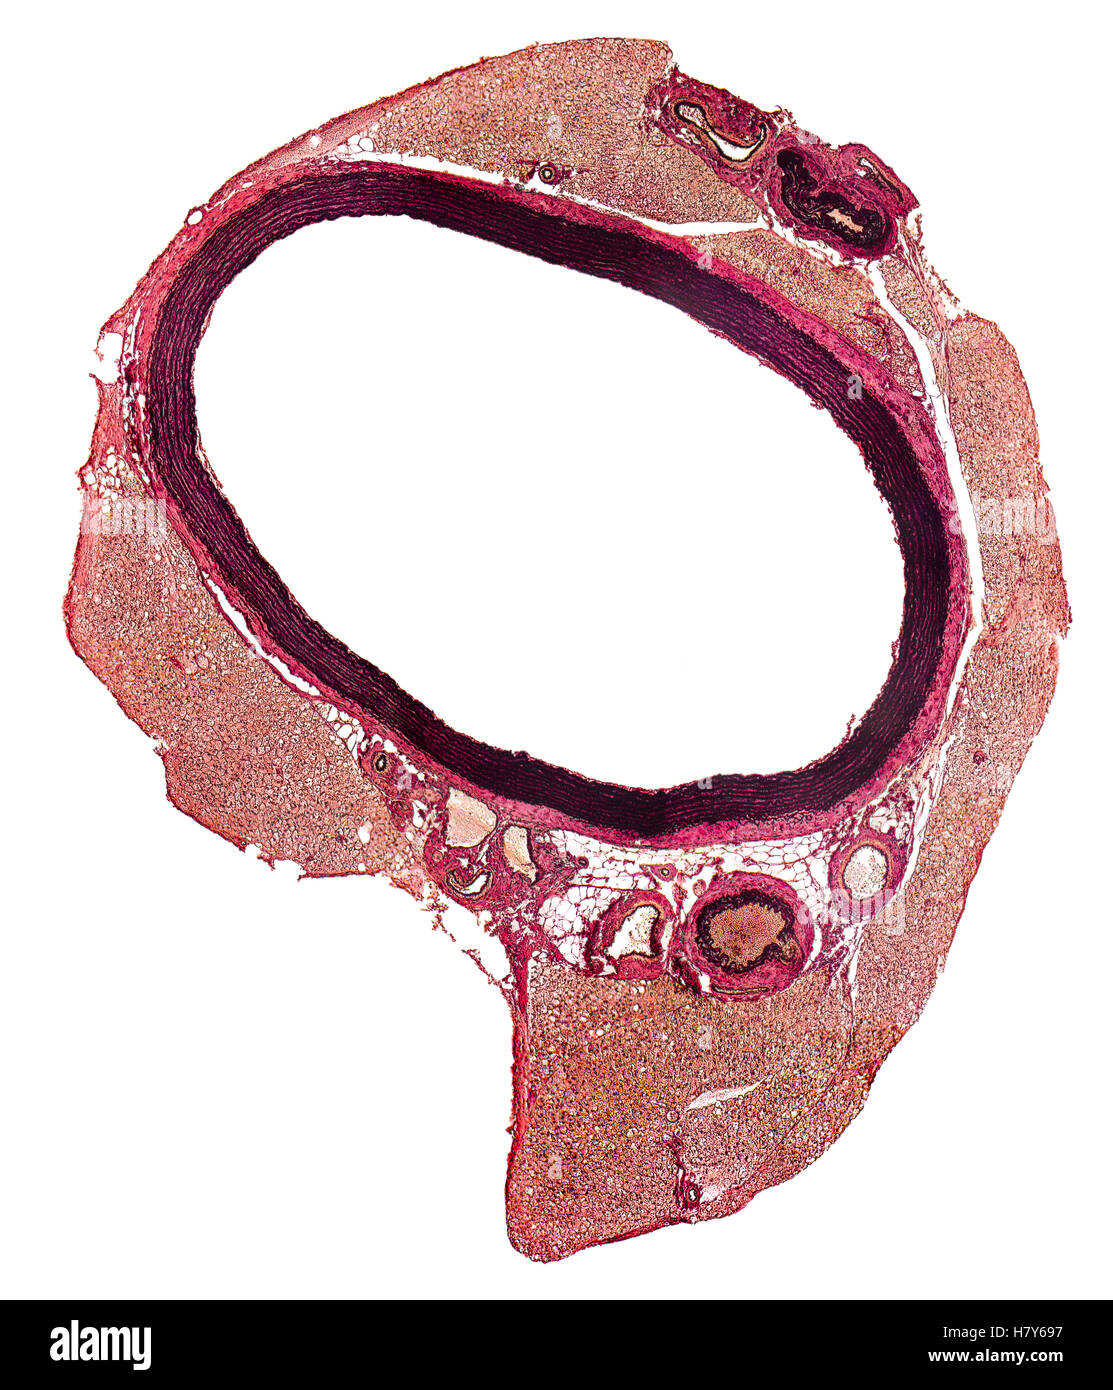 mikroskopischen Detail zeigt einen Querschnitt eines Blutgefäßes von einer Ratte Stockfoto